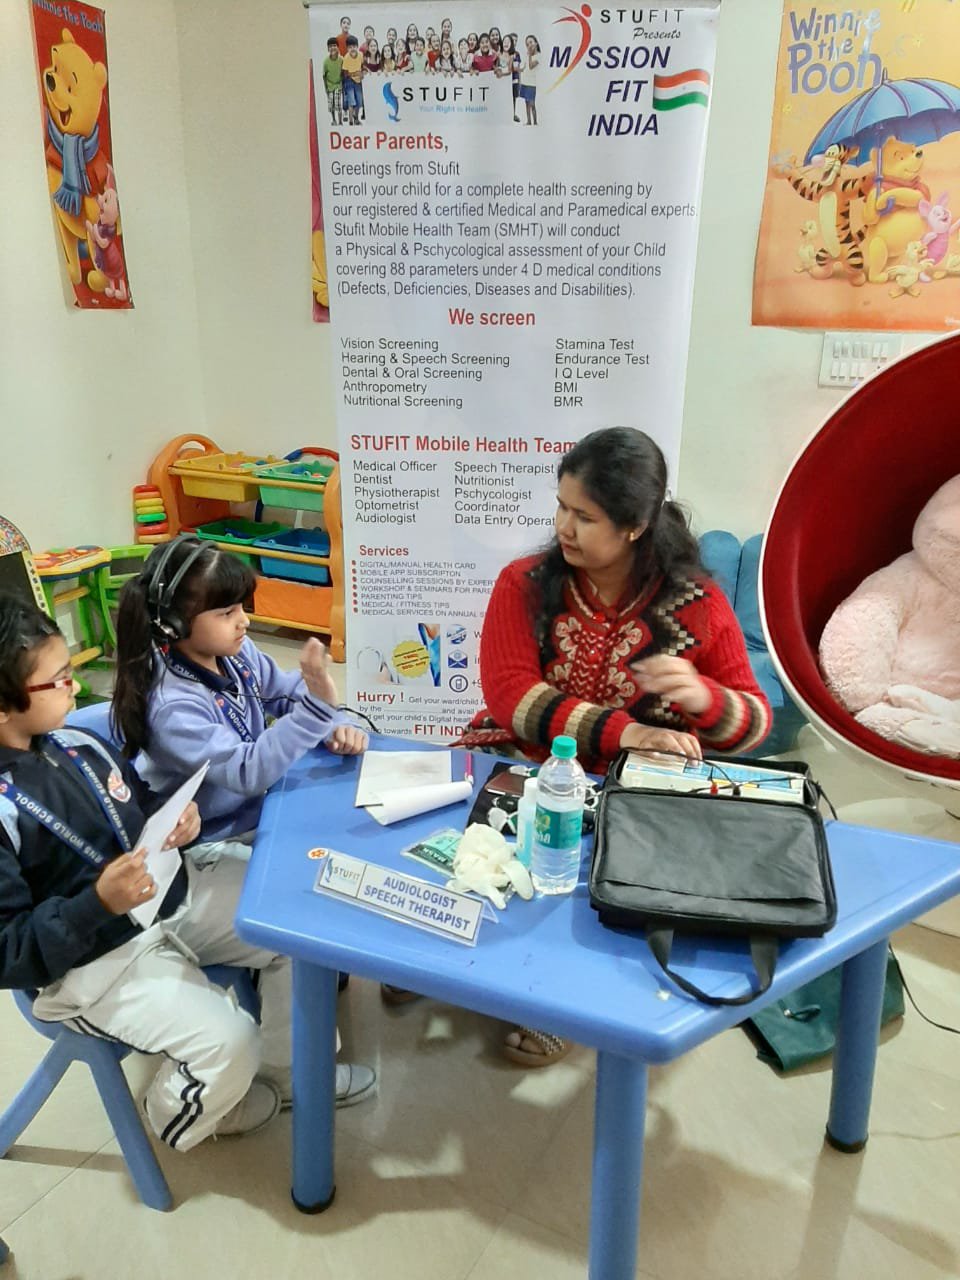 एक ऐसा स्टार्टअप जो रखेगा आपके बच्चों की सेहत का ख़्याल और साथ ही साथ लोगों को प्रदान करेगा रोज़गार के अवसर | New India Times